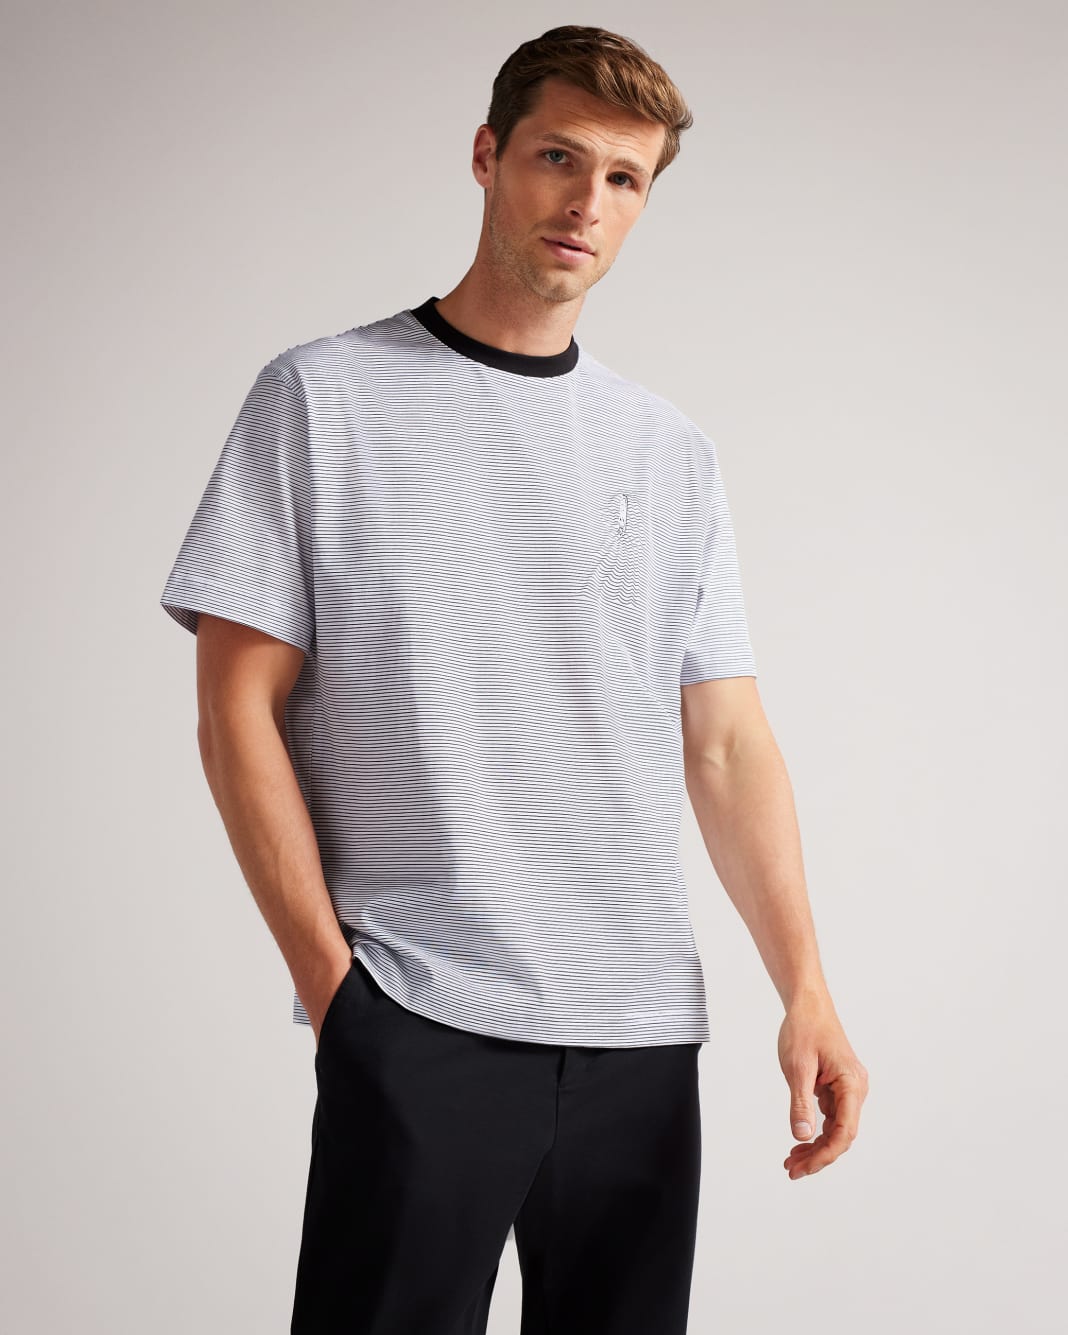 테드 베이커 반팔티 Ted Baker Short Sleeve Sublimation Printed T-Shirt,White